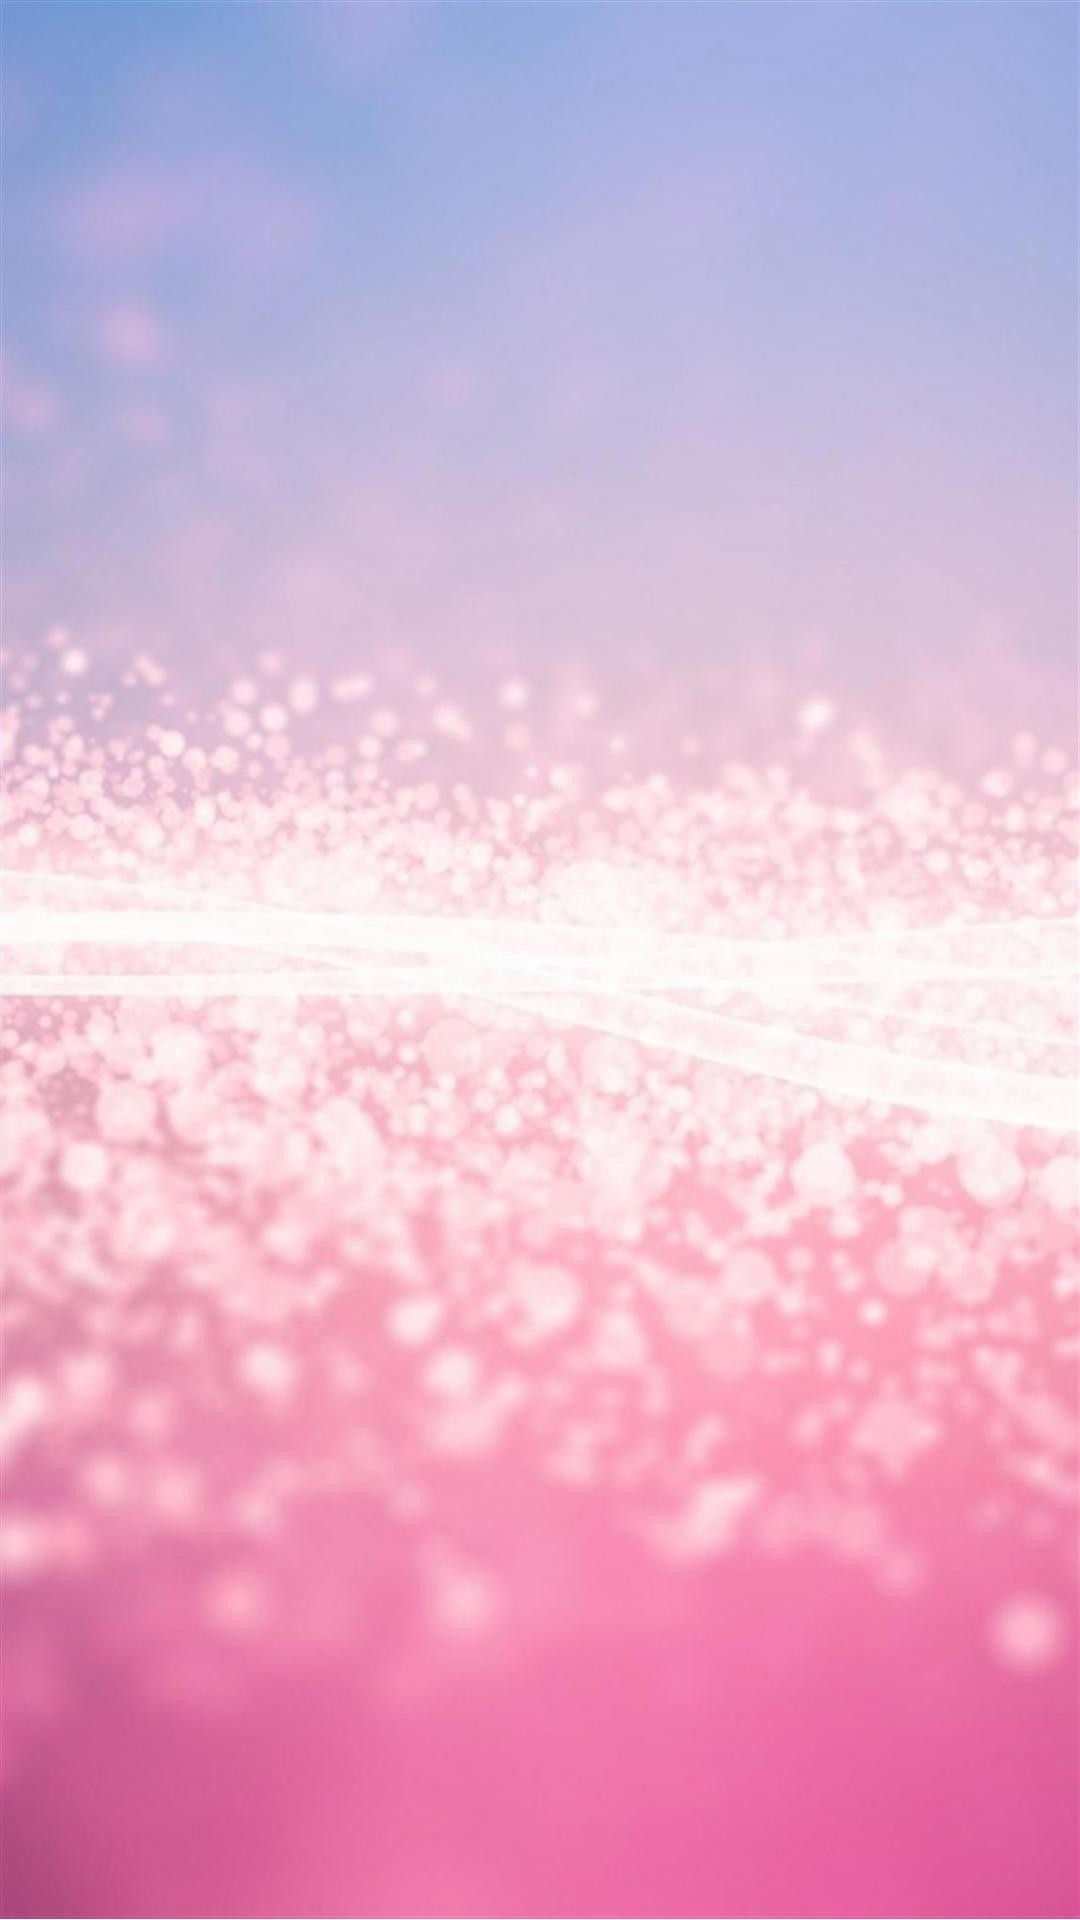 1080x1920 Pink Glitter Stardust Smartphone Wallpaper HD GetPhotos 